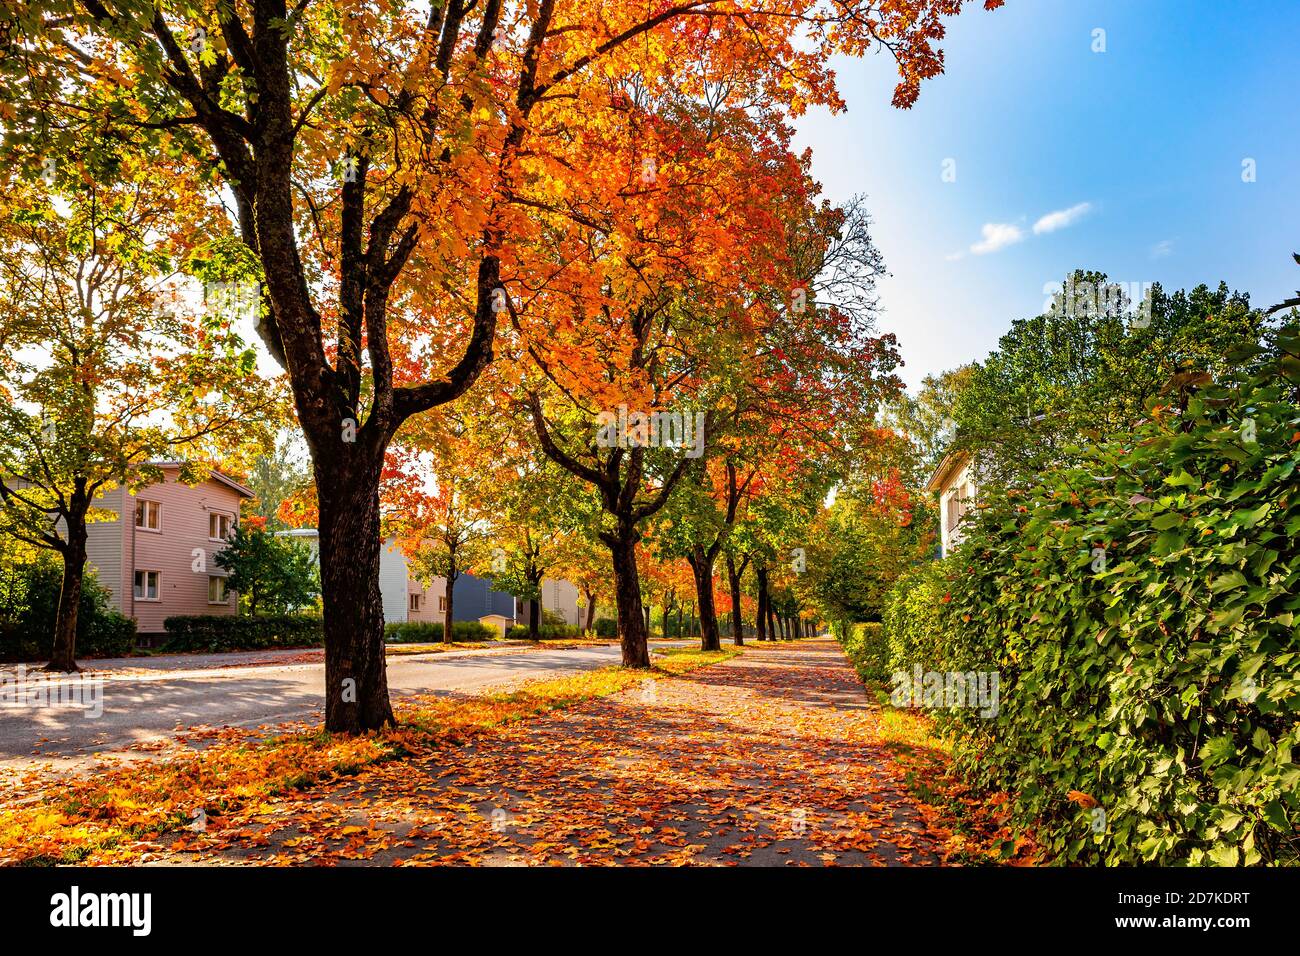 Route colorée bordée d'arbres. Arbres rouges, orange, verts et jaunes sur le bord de la route. Une rue couverte de feuilles en ville. Couleurs d'automne. Finlande. Banque D'Images